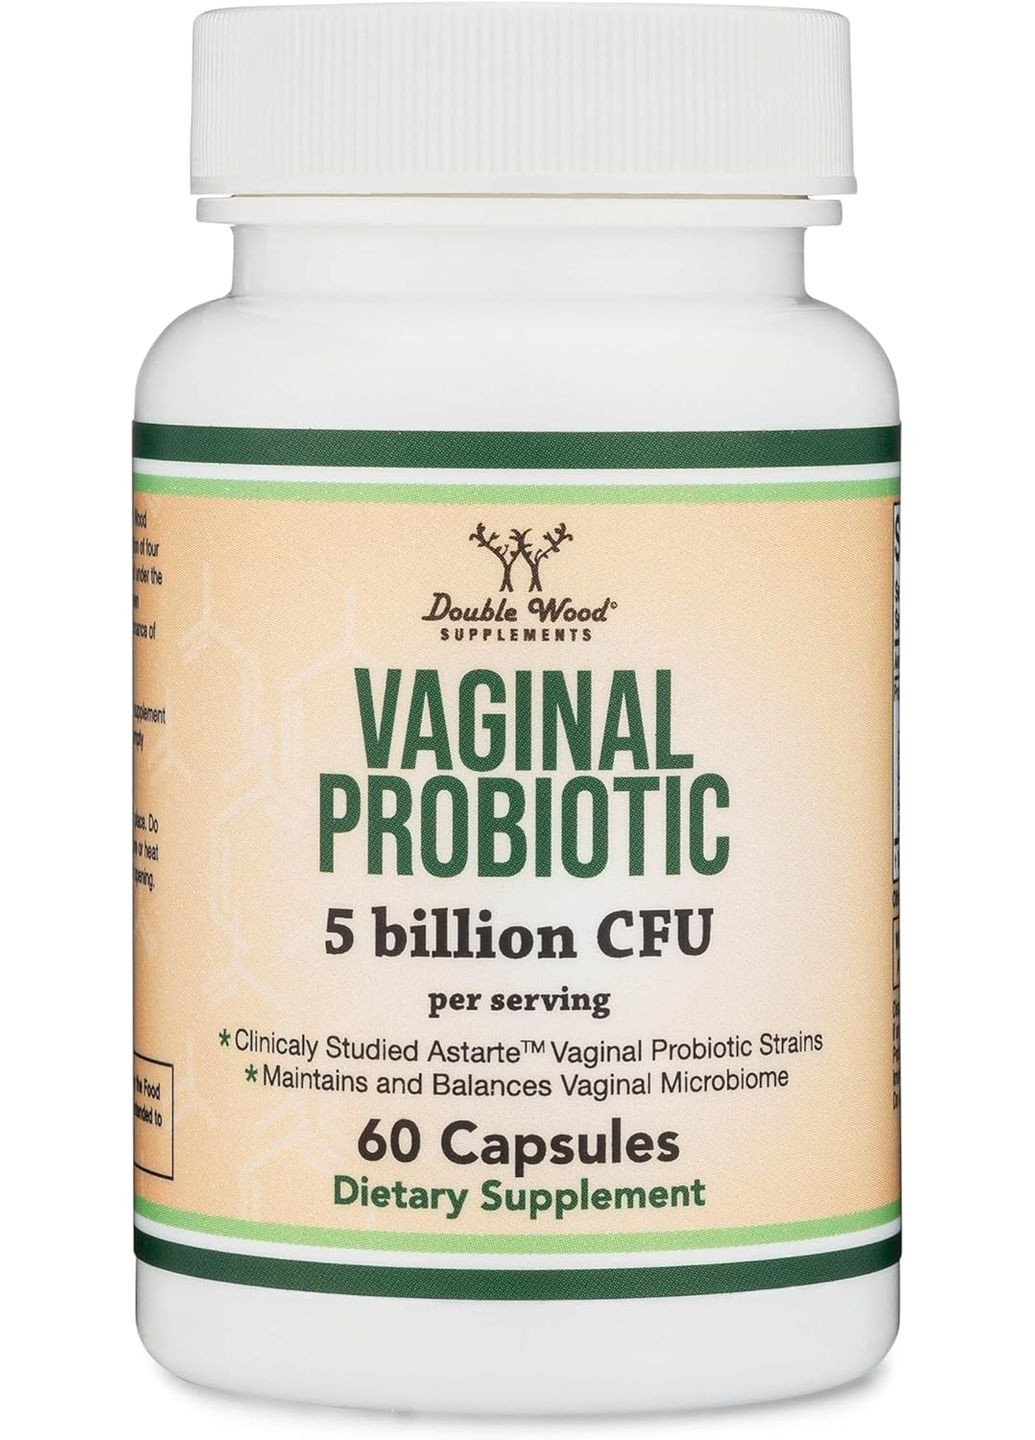 Вагинальный пробиотик для женщин Double Wood Vaginal Probiotic (5 Billion CFU на 2 капсулы), 60capsules Double Wood Supplements (289466096)